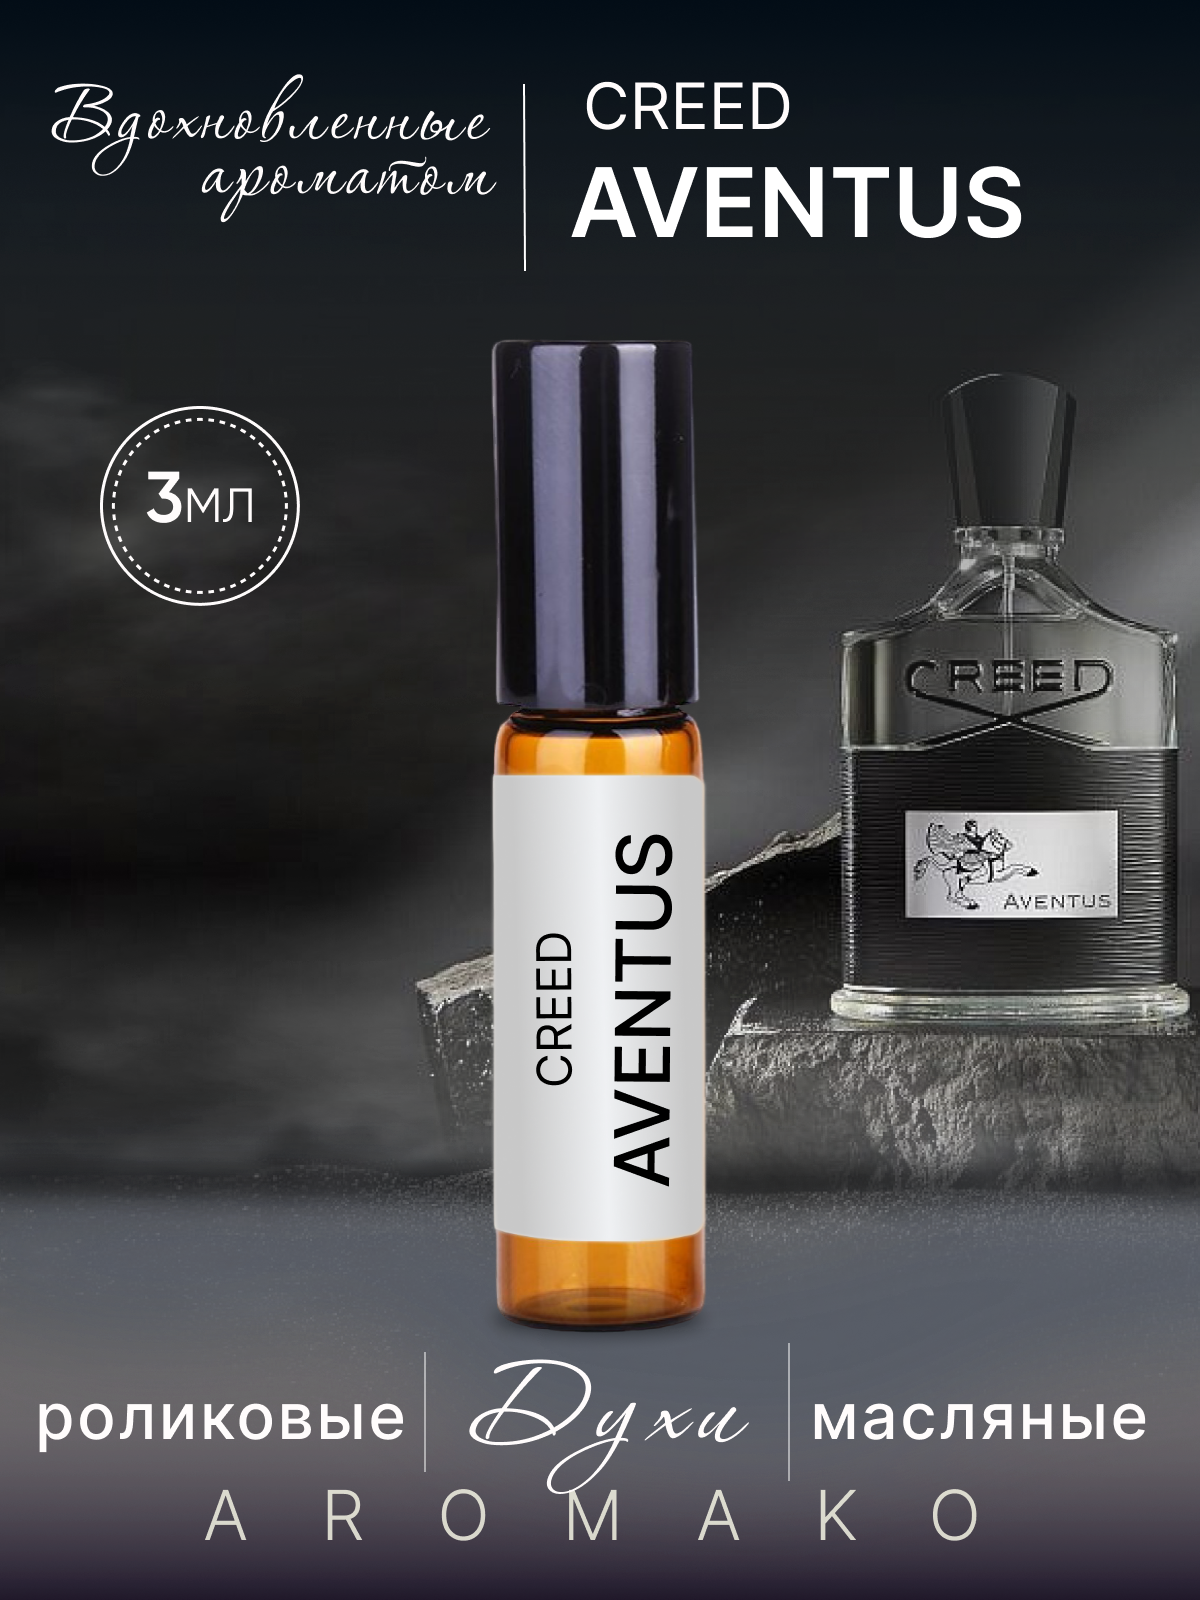 Духи масляные парфюм - ролик по мотивам Creed Aventus 3 мл AROMAKO